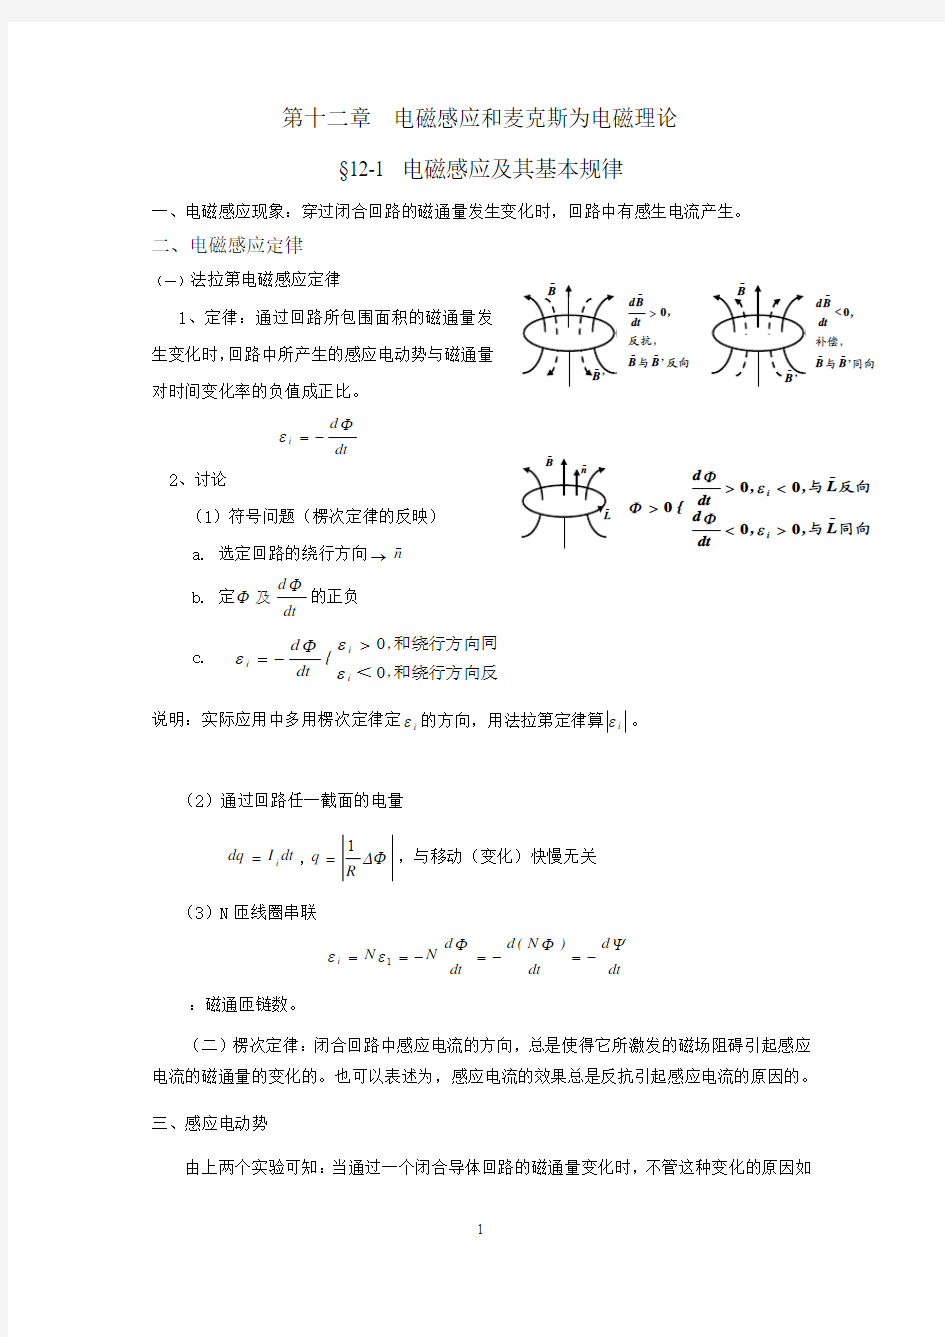 物理学(第三版)刘克哲,张承琚 第12章